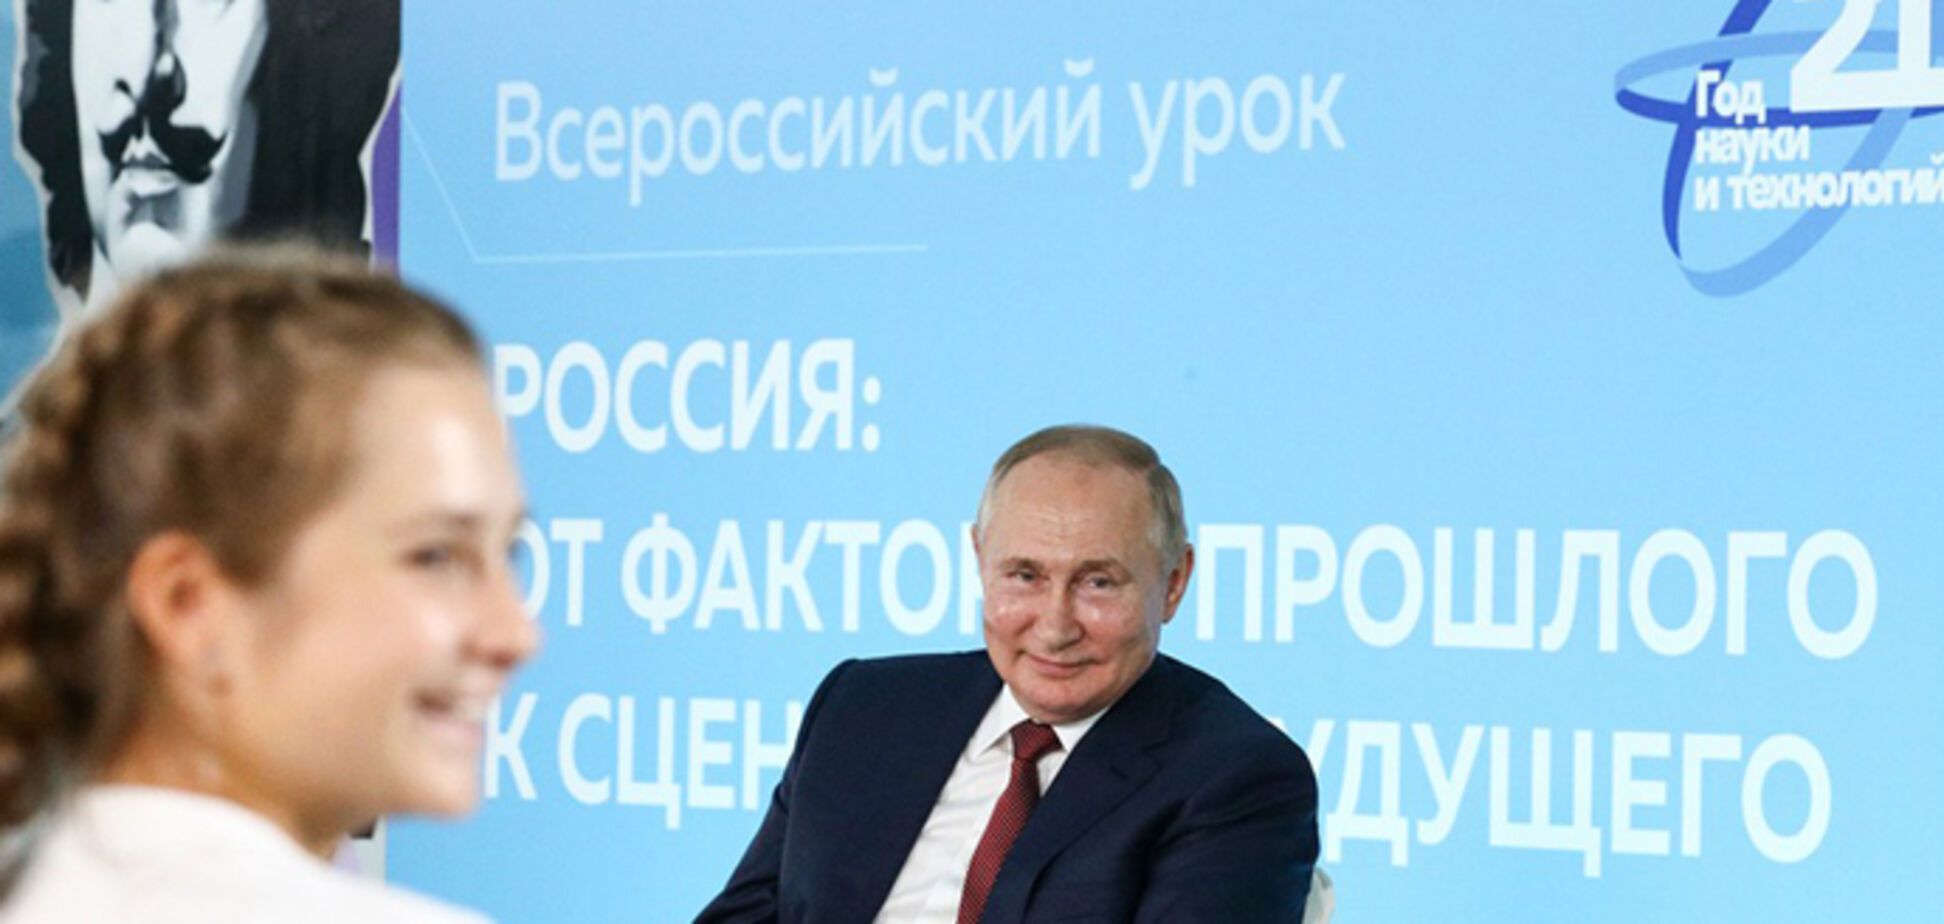 'Вбиває – значить любить': в Україні пояснили збочену логіку 'історика' Путіна